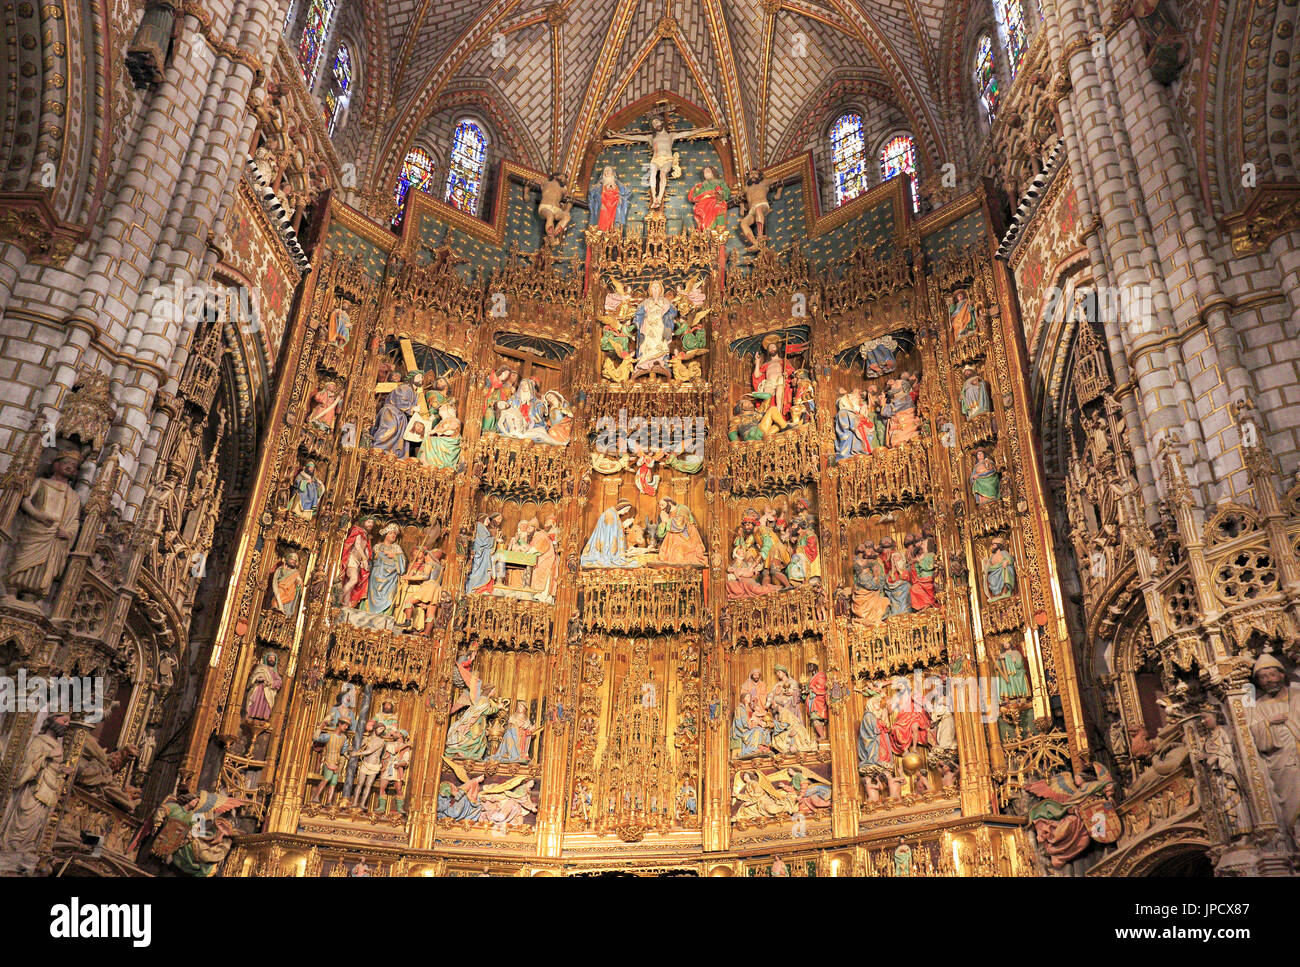 L'autel principal à l'intérieur de la cathédrale de Saint Marie Primat de Tolède, un catholique romain 13e siècle cathédrale gothique de l'UNESCO. Banque D'Images